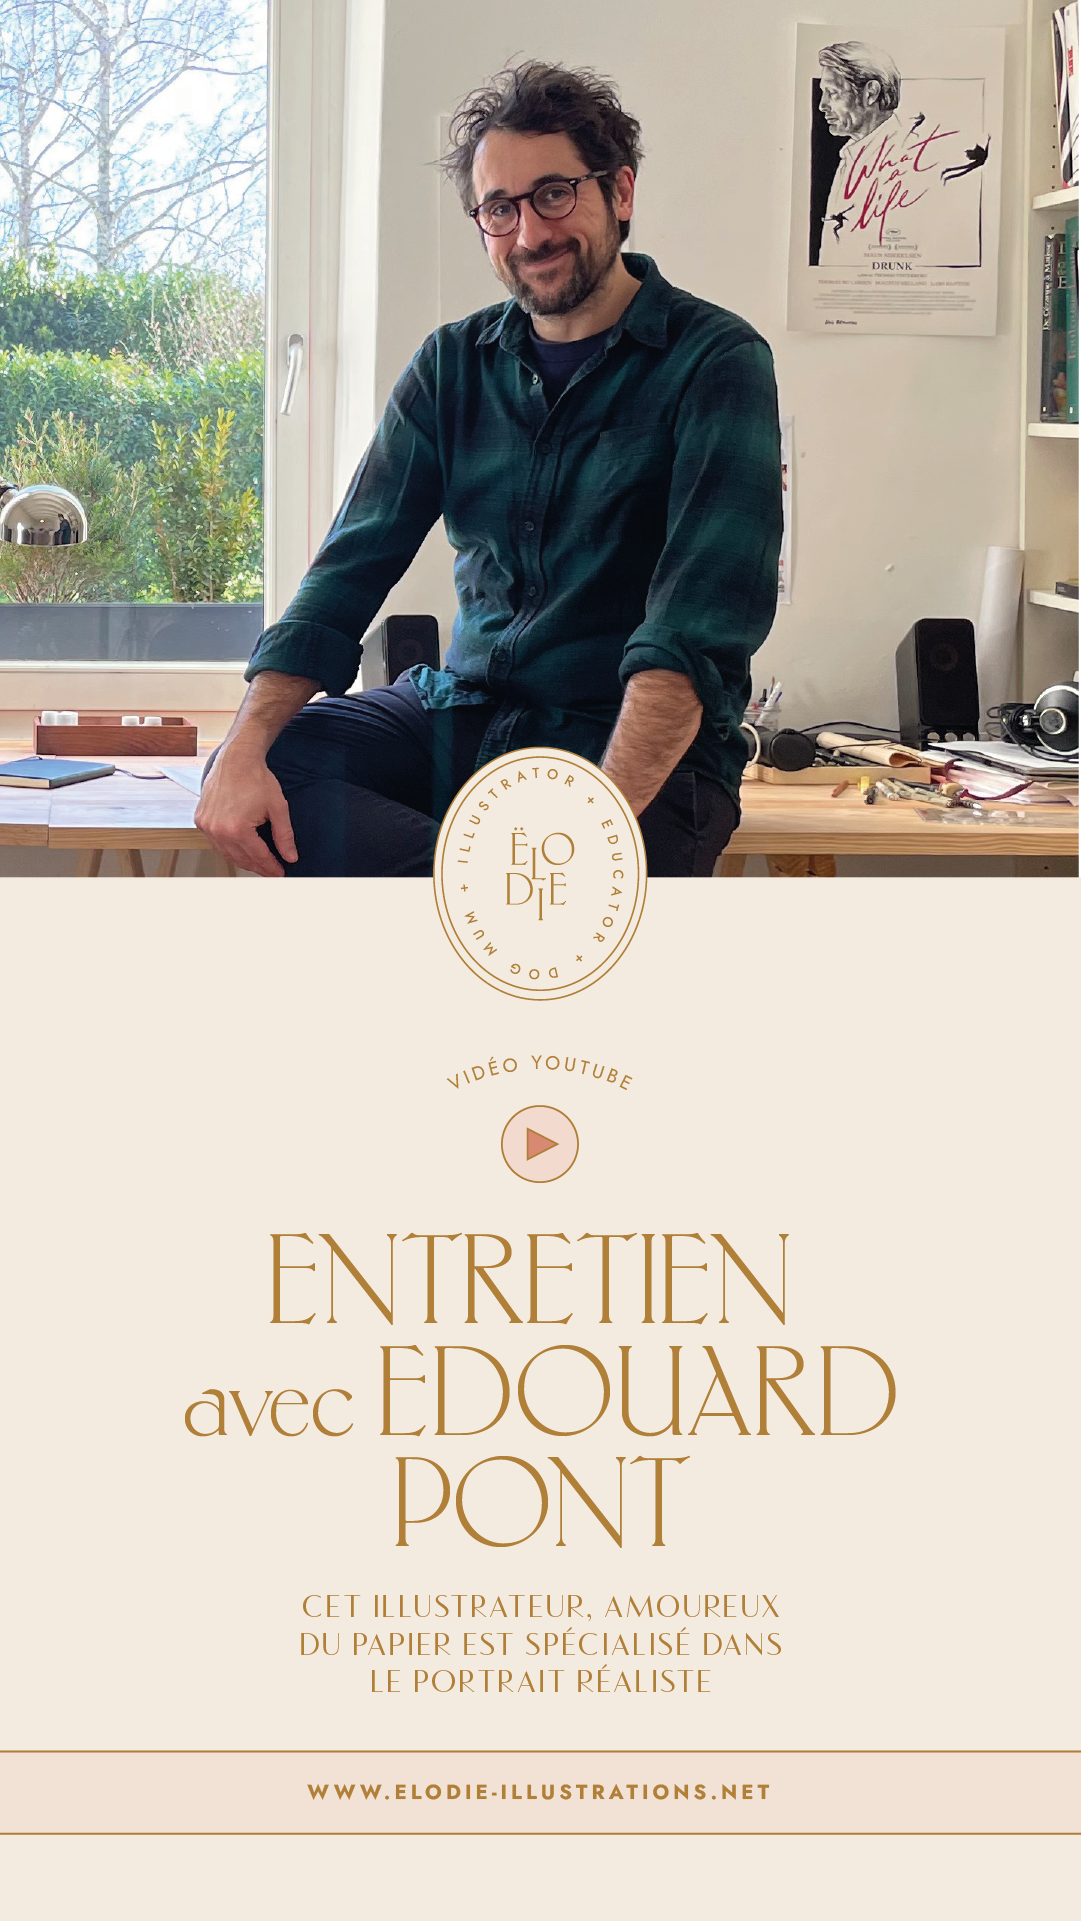 Dans cette vidéo je discute avec Edouard Pont, un illustrateur spécialisé dans le portrait réaliste et qui illustre pour la presse